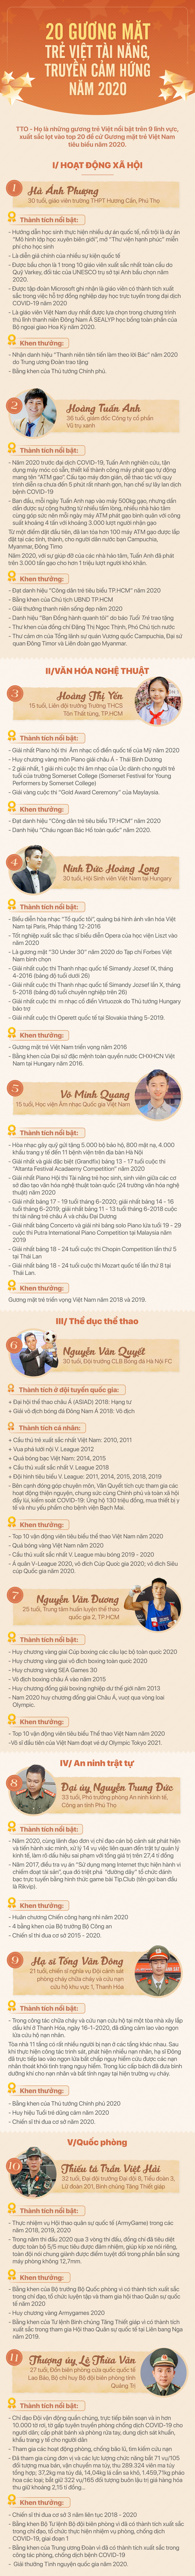 Mời bạn bình chọn 10 gương mặt trẻ Việt tài năng, truyền cảm hứng năm 2020 - Ảnh 1.